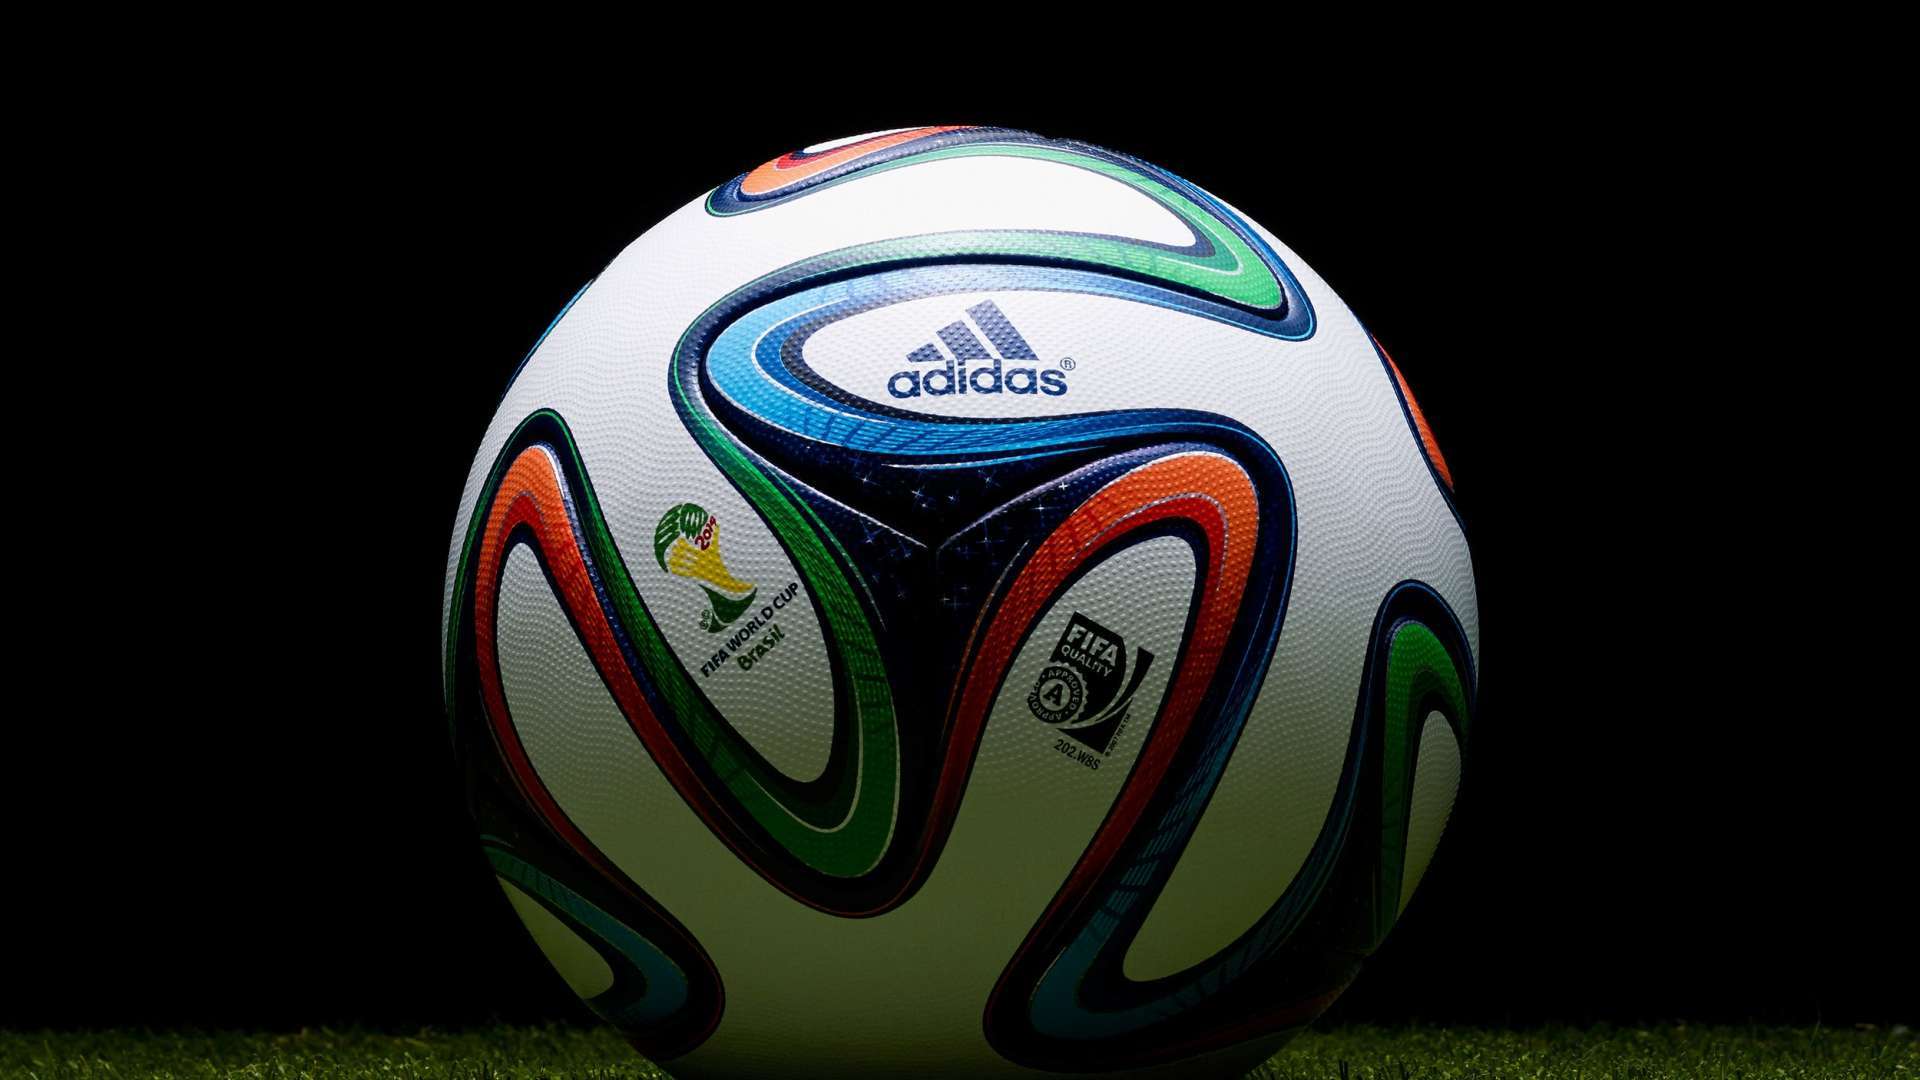 World Cup Adidas Ball Football HD Wallpaper 1080p HDwallwide